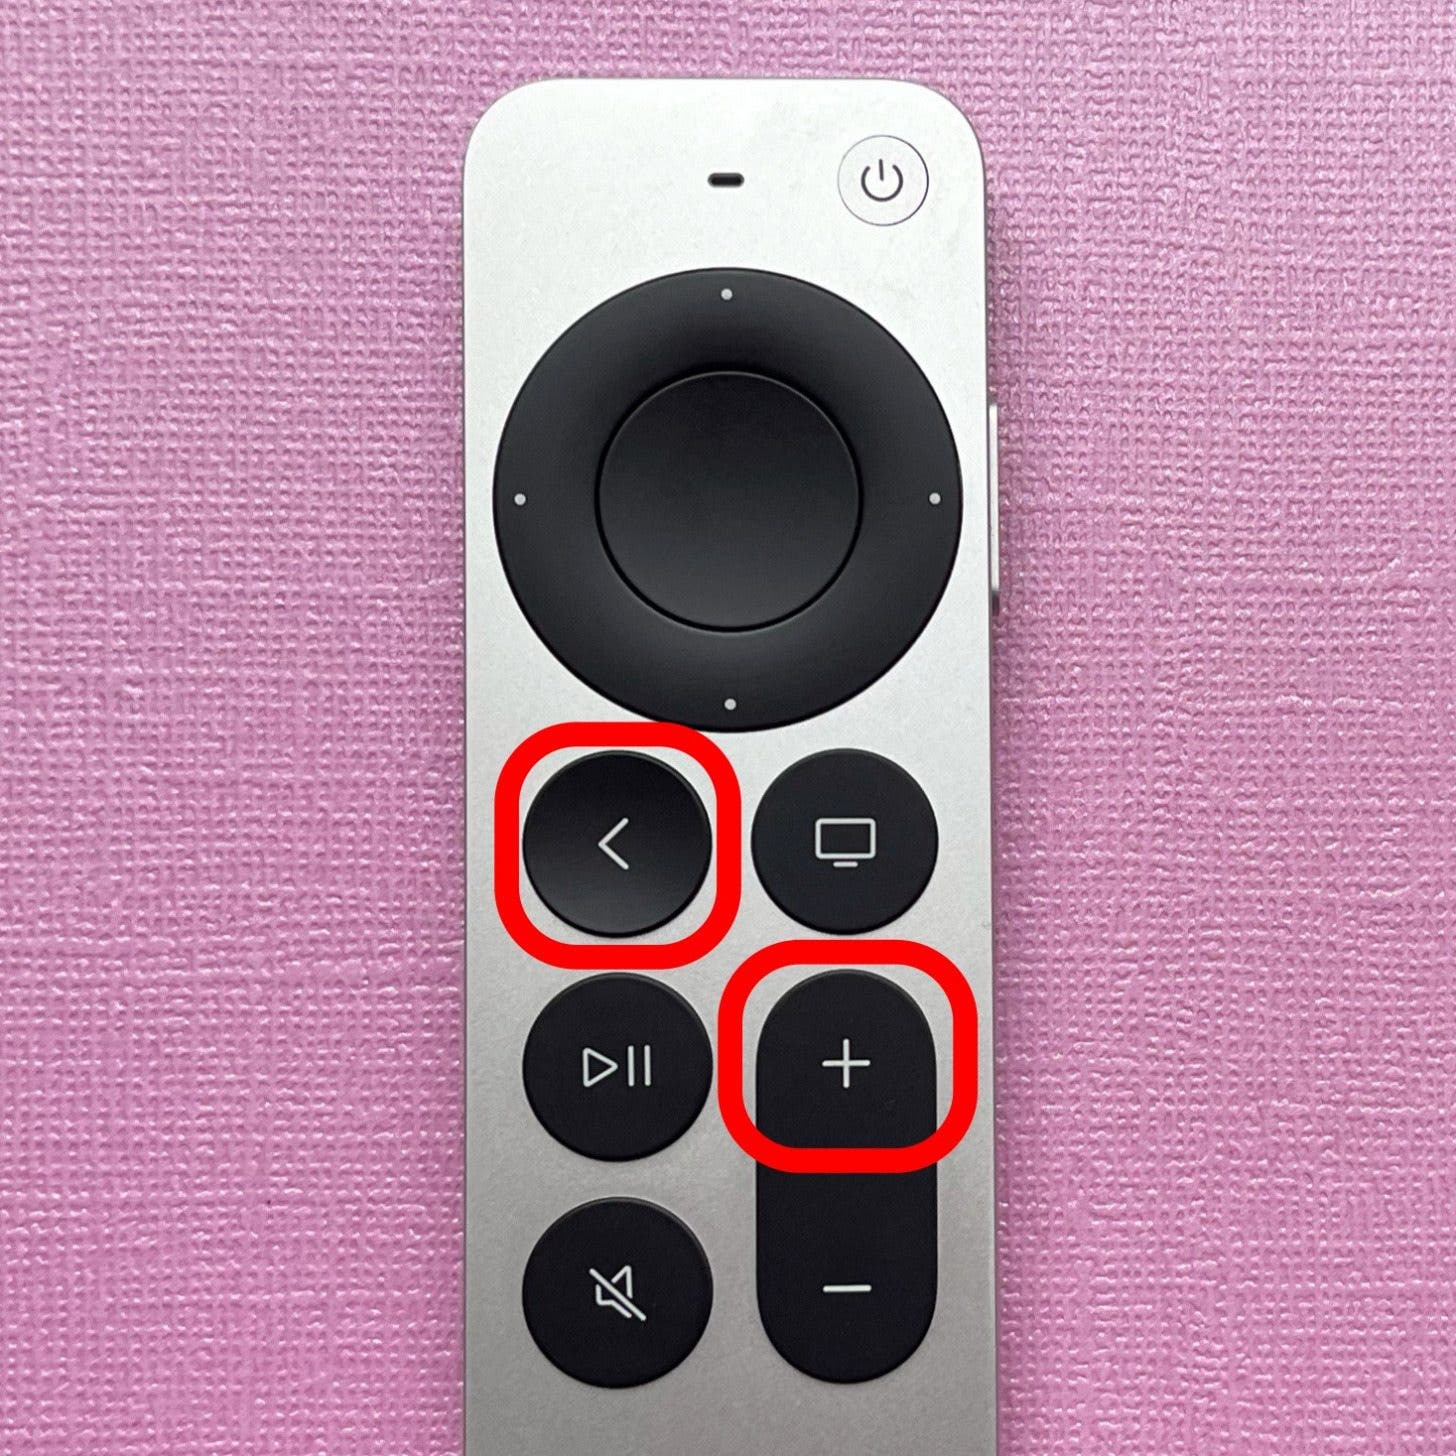 Maintenez enfoncés simultanément les boutons Retour et Augmenter le volume jusqu'à ce qu'une fenêtre contextuelle s'affiche sur l'écran de votre Apple TV. 